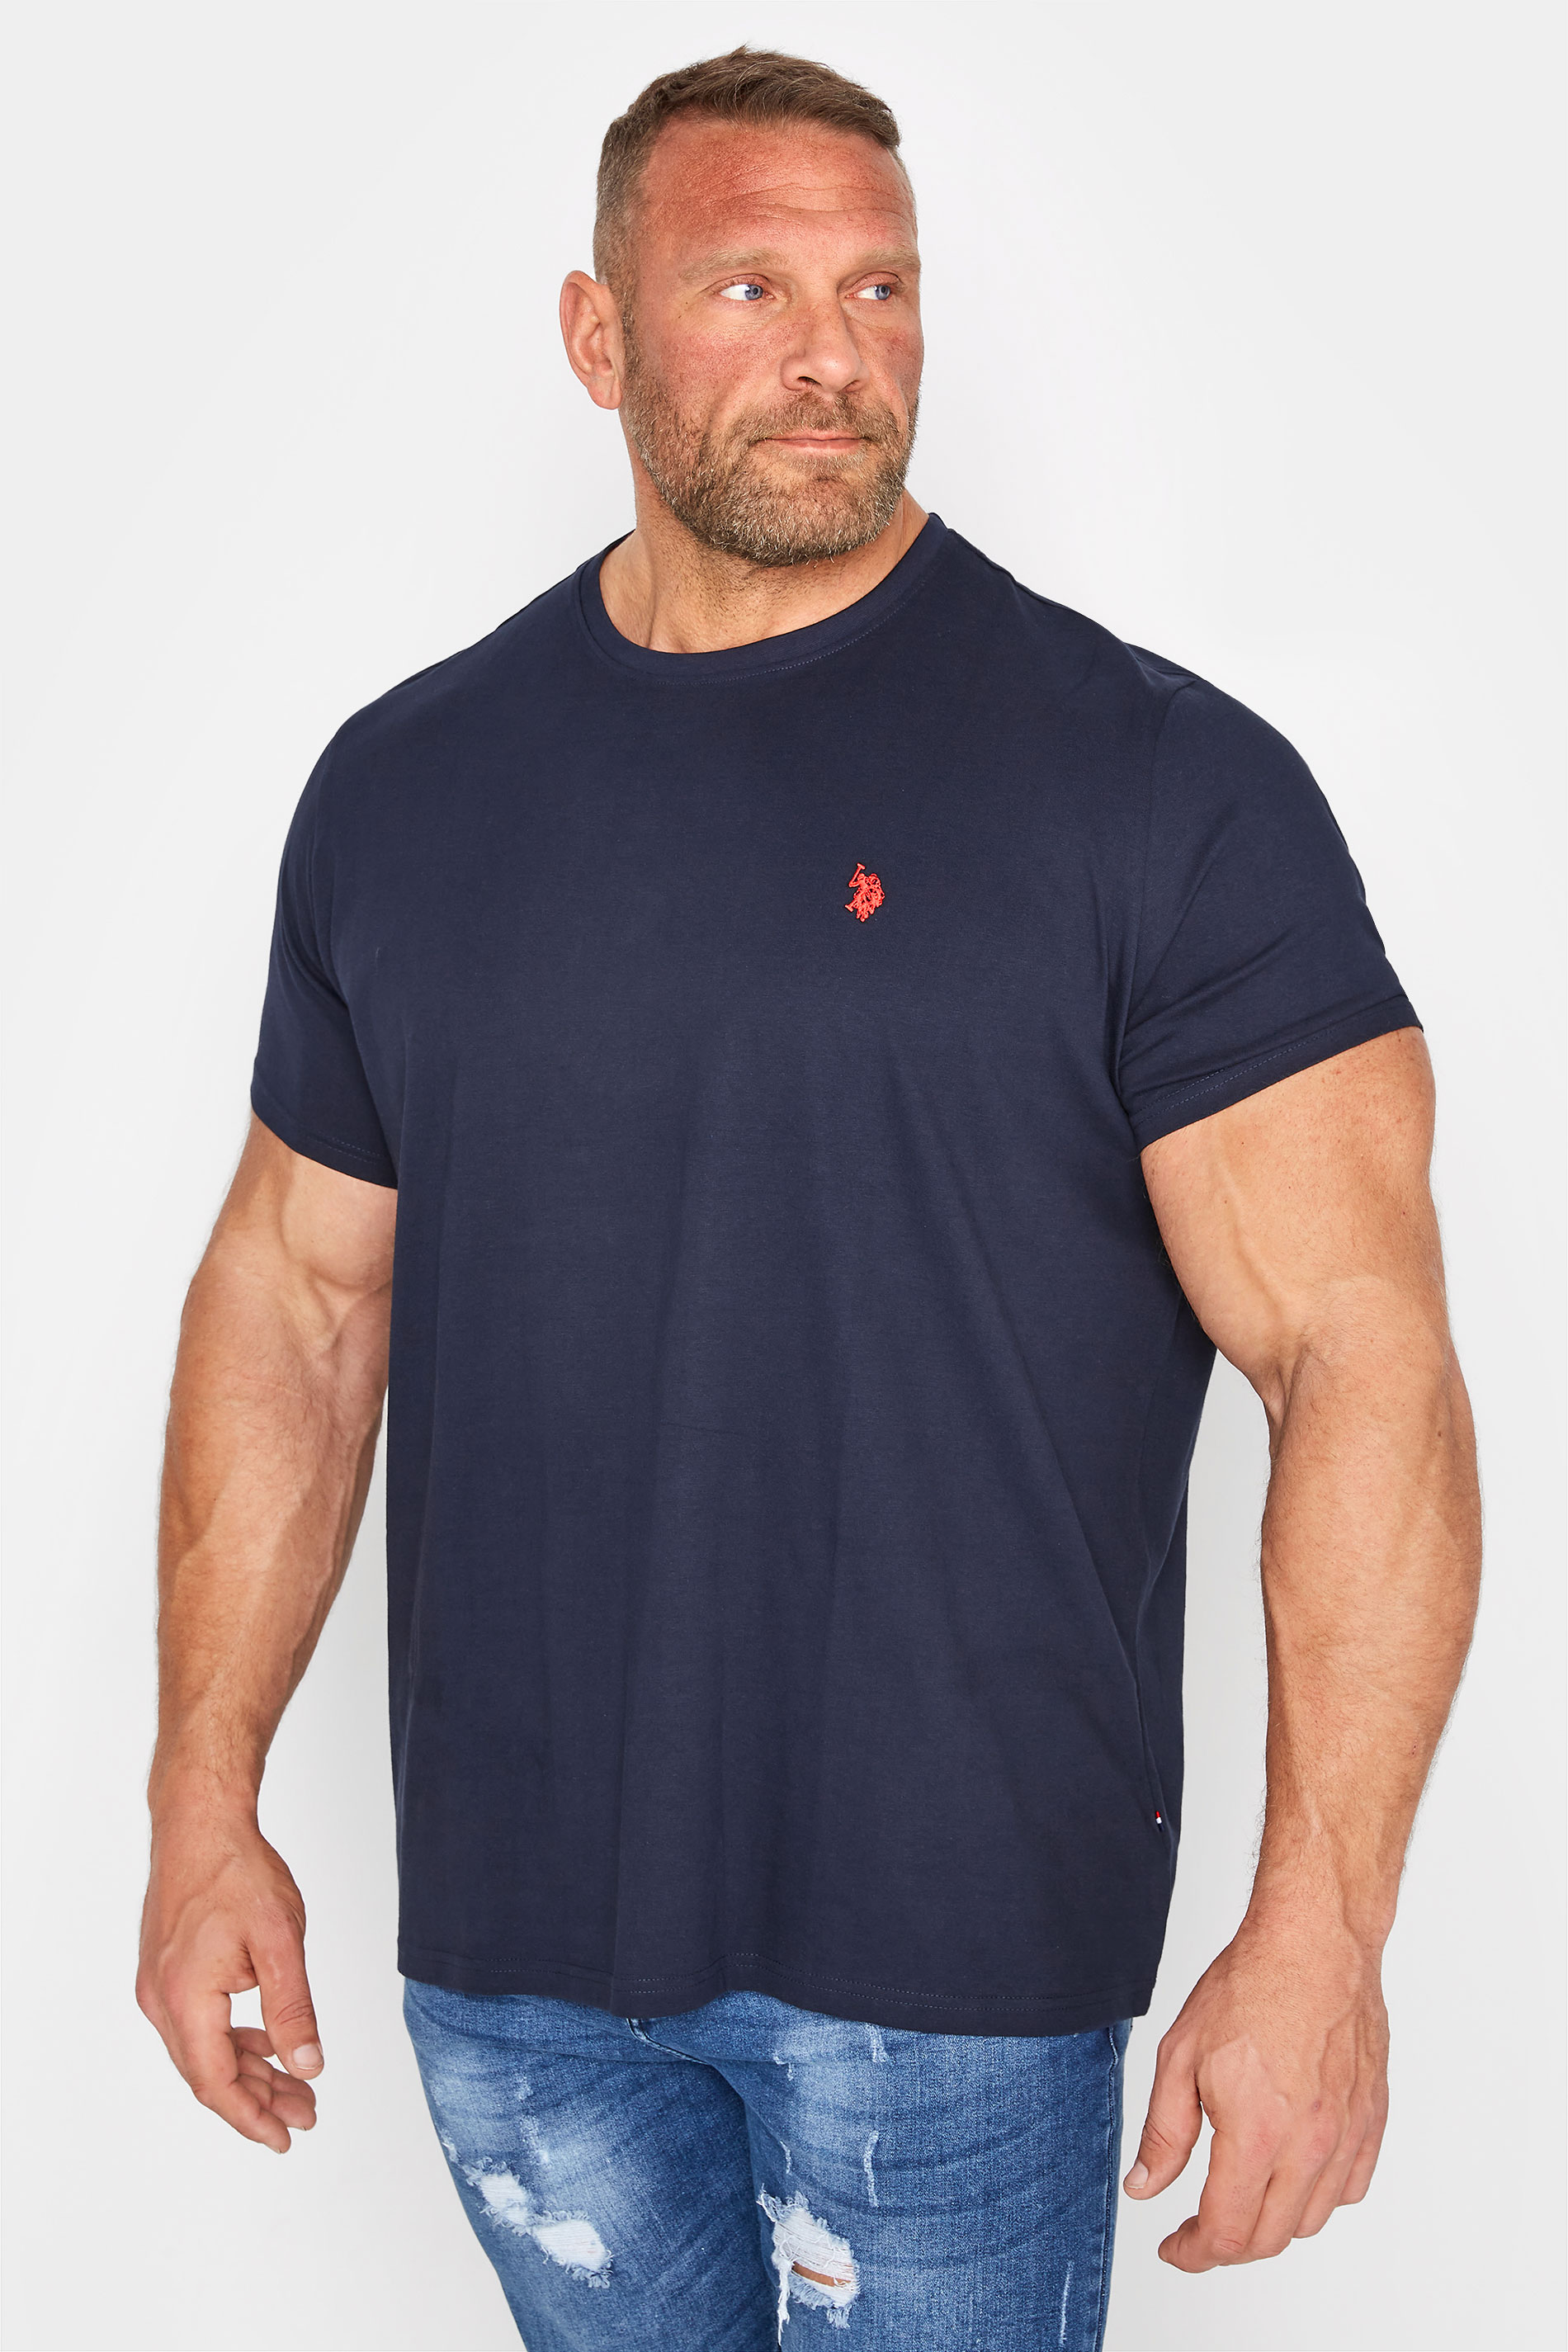 U.S. POLO ASSN. Big & Tall Navy Blue Core T-Shirt 1